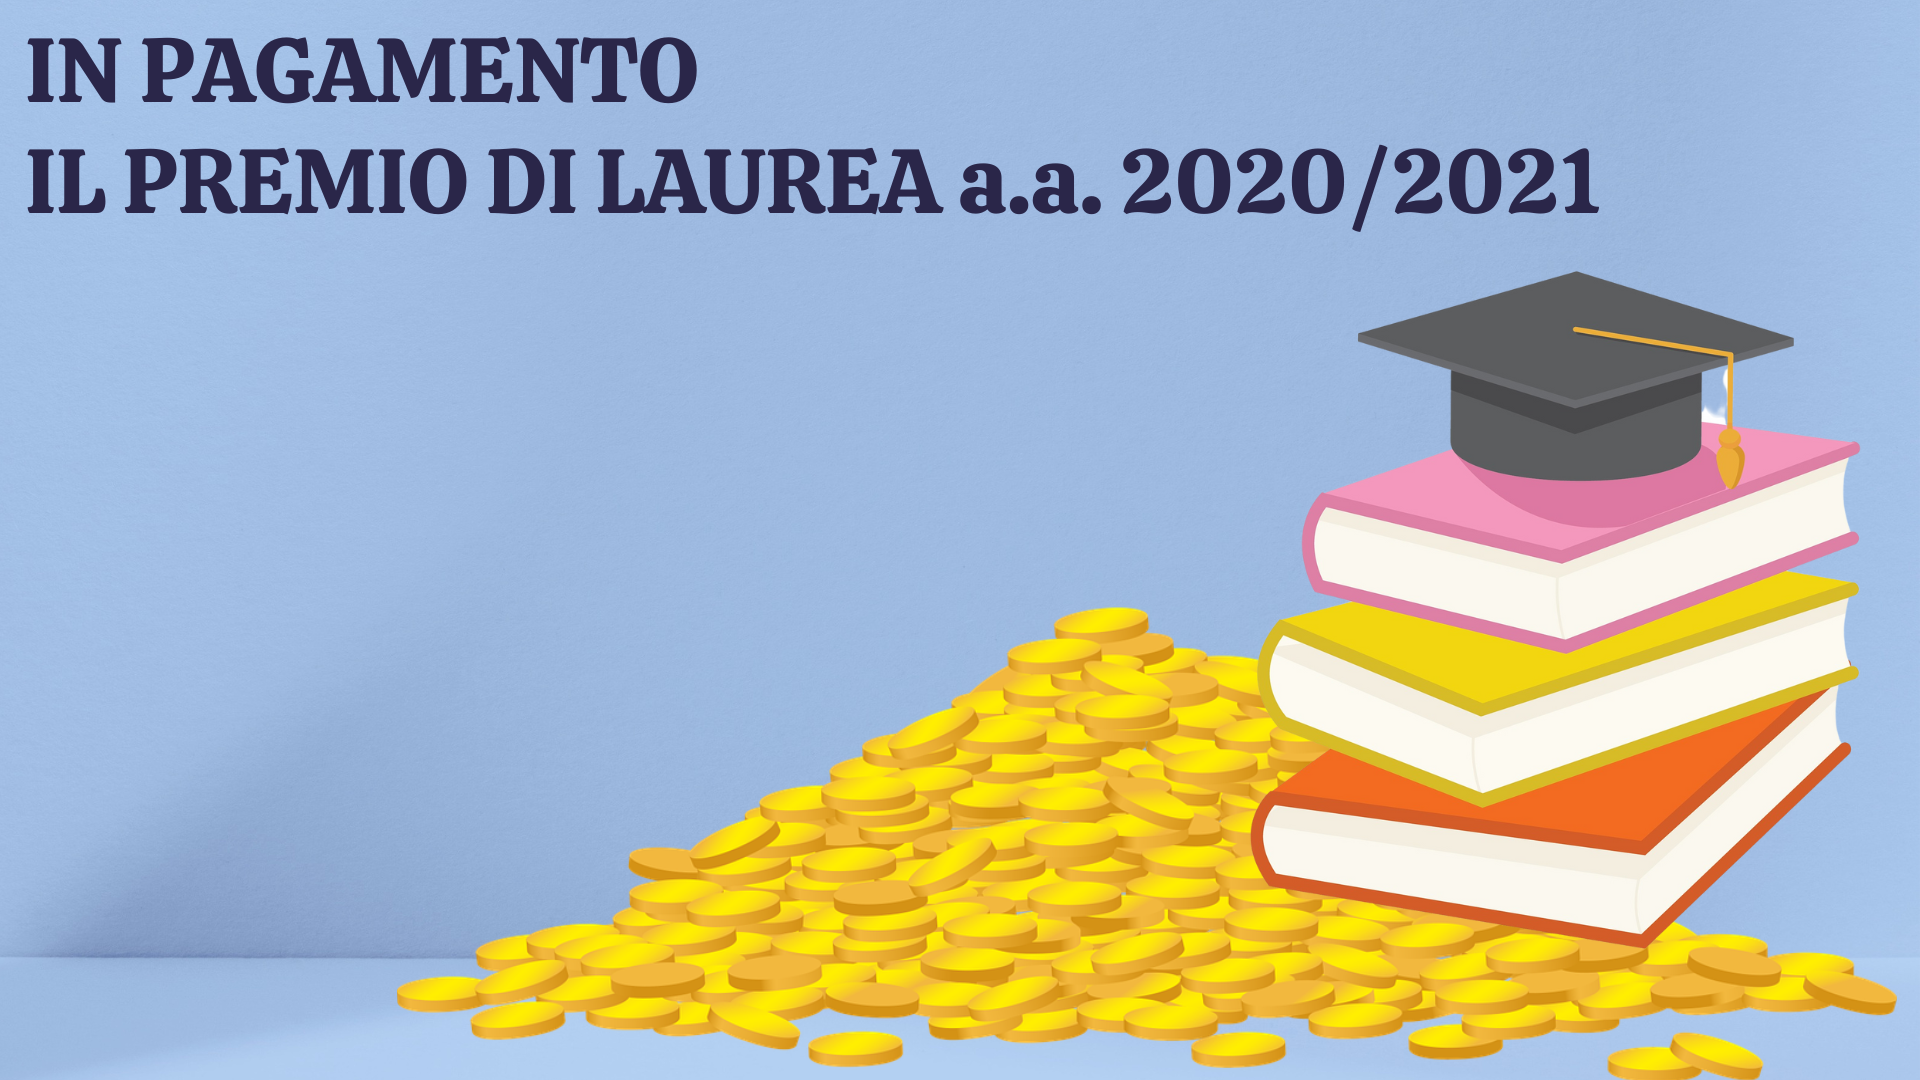 In pagamento il Premio di Laurea a.a. 2020/2021